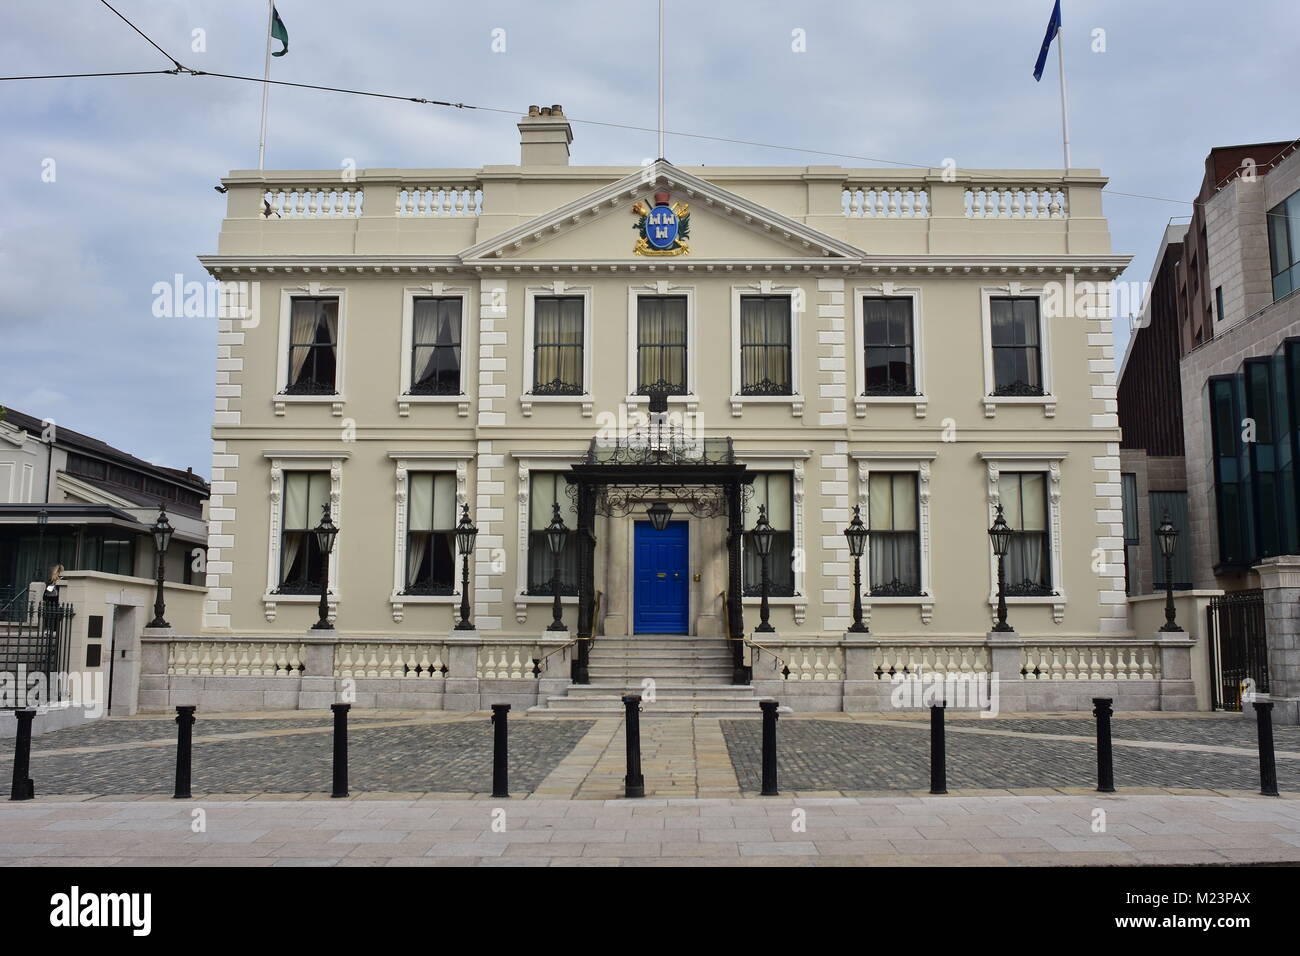 Herrenhaus mit Wappen der Oberbürgermeister von Dublin, über Gebäude der Eingang befindet sich in der Innenstadt von Dublin in Irland. Stockfoto